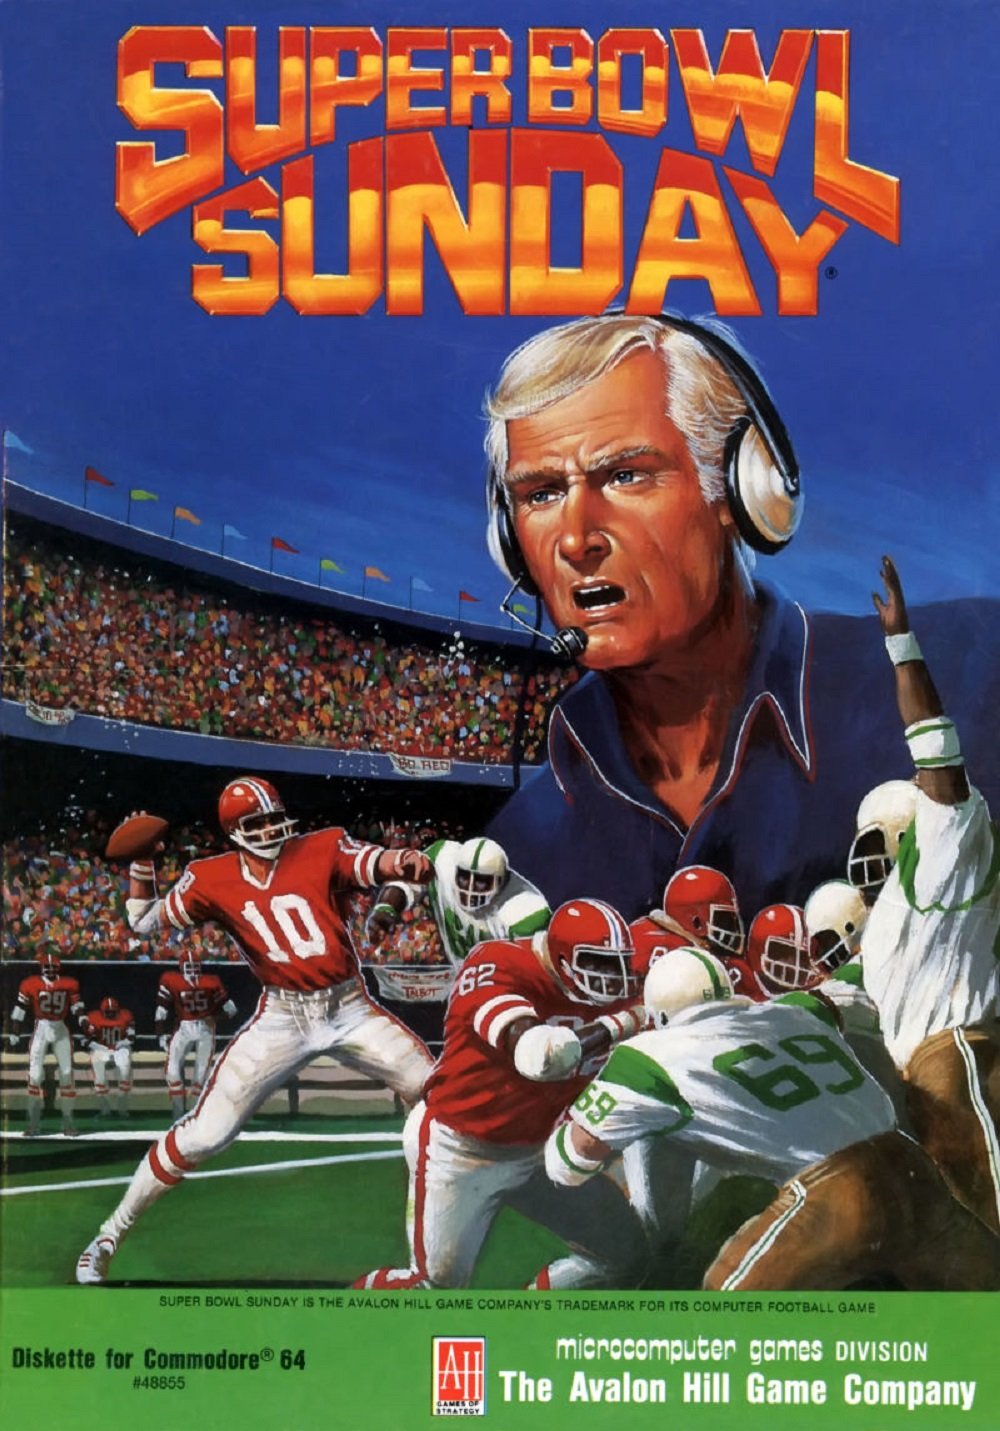 Image of Super Bowl Sunday